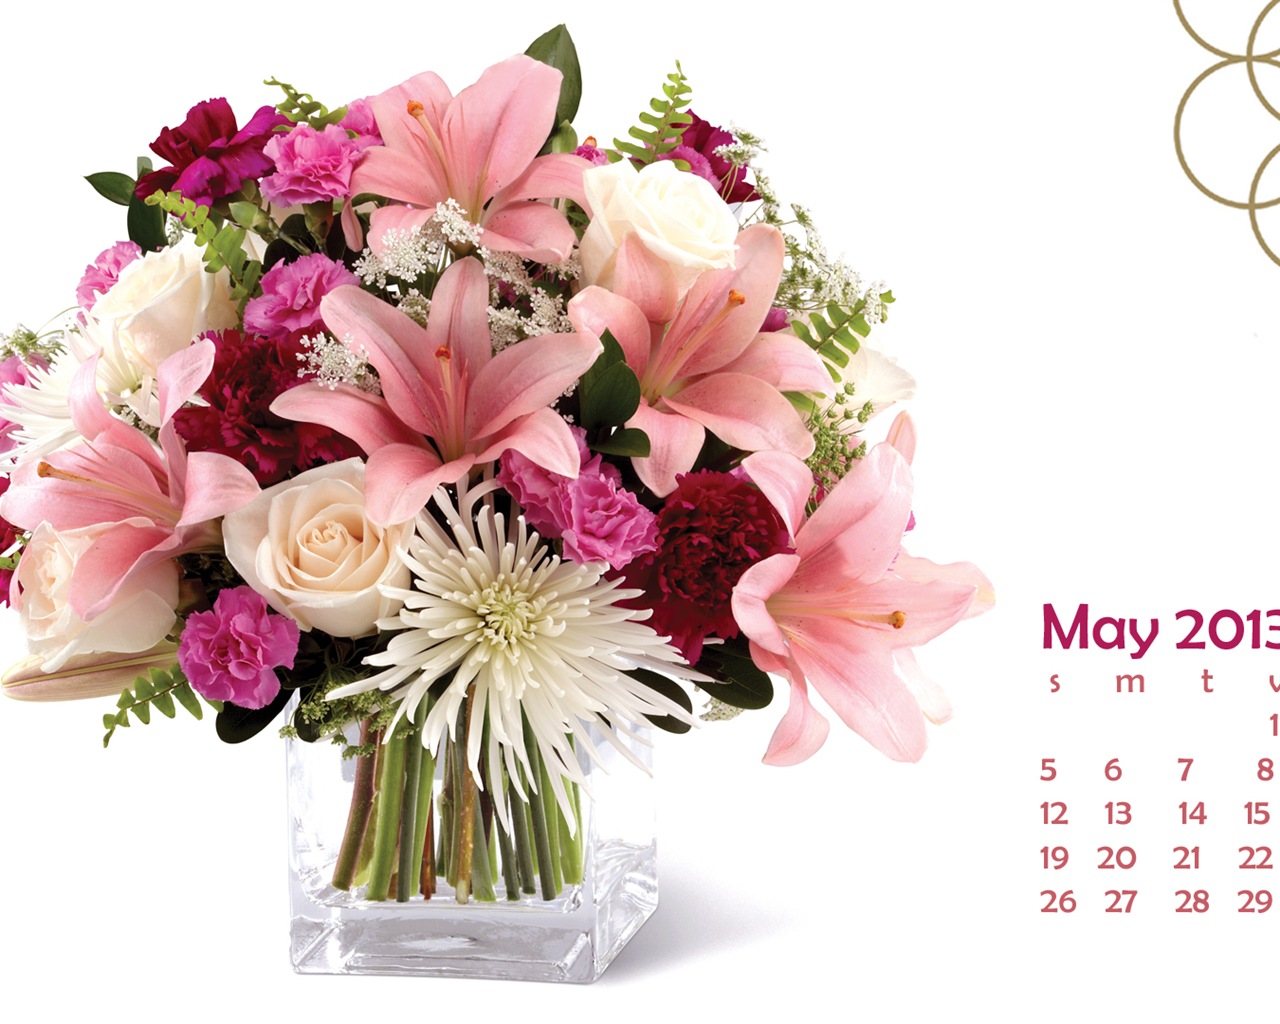 Mayo 2013 fondos de escritorio calendario (2) #22 - 1280x1024